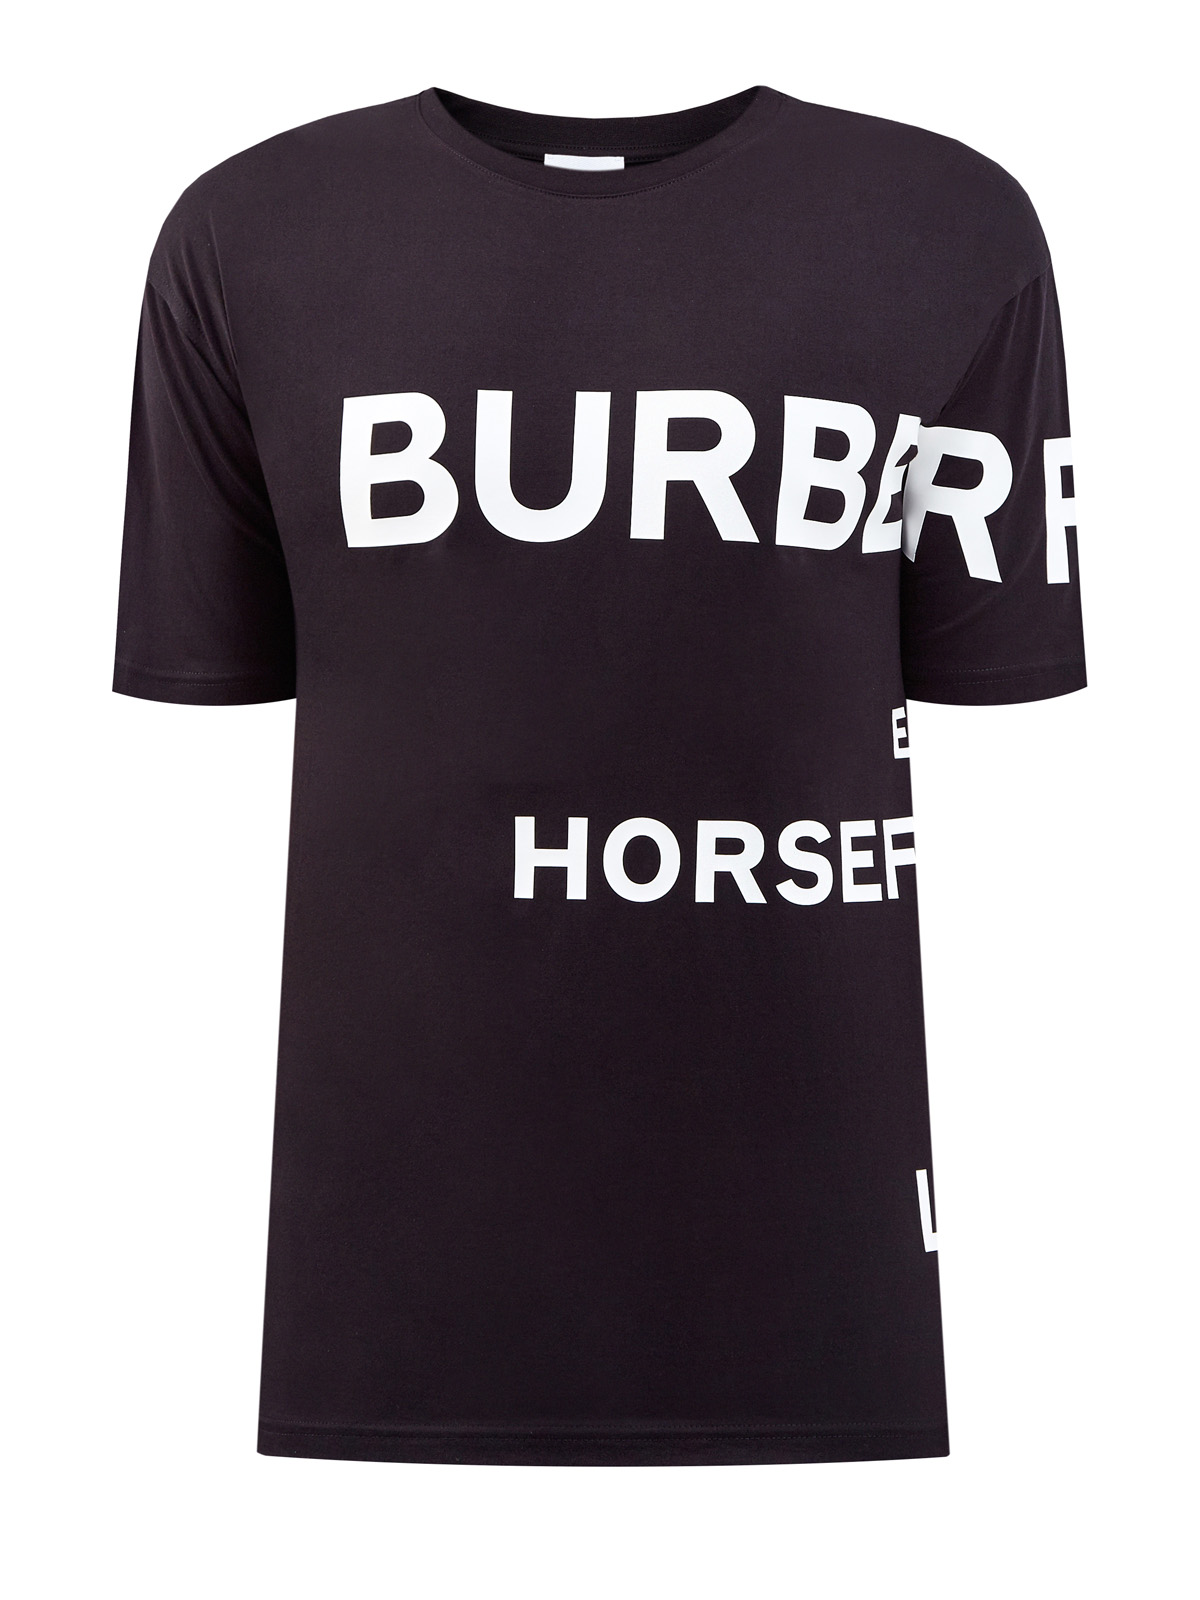 Хлопковая футболка из джерси с контрастным принтом Horseferry BURBERRY, цвет черный, размер S;L;2XL;3XL;M - фото 1